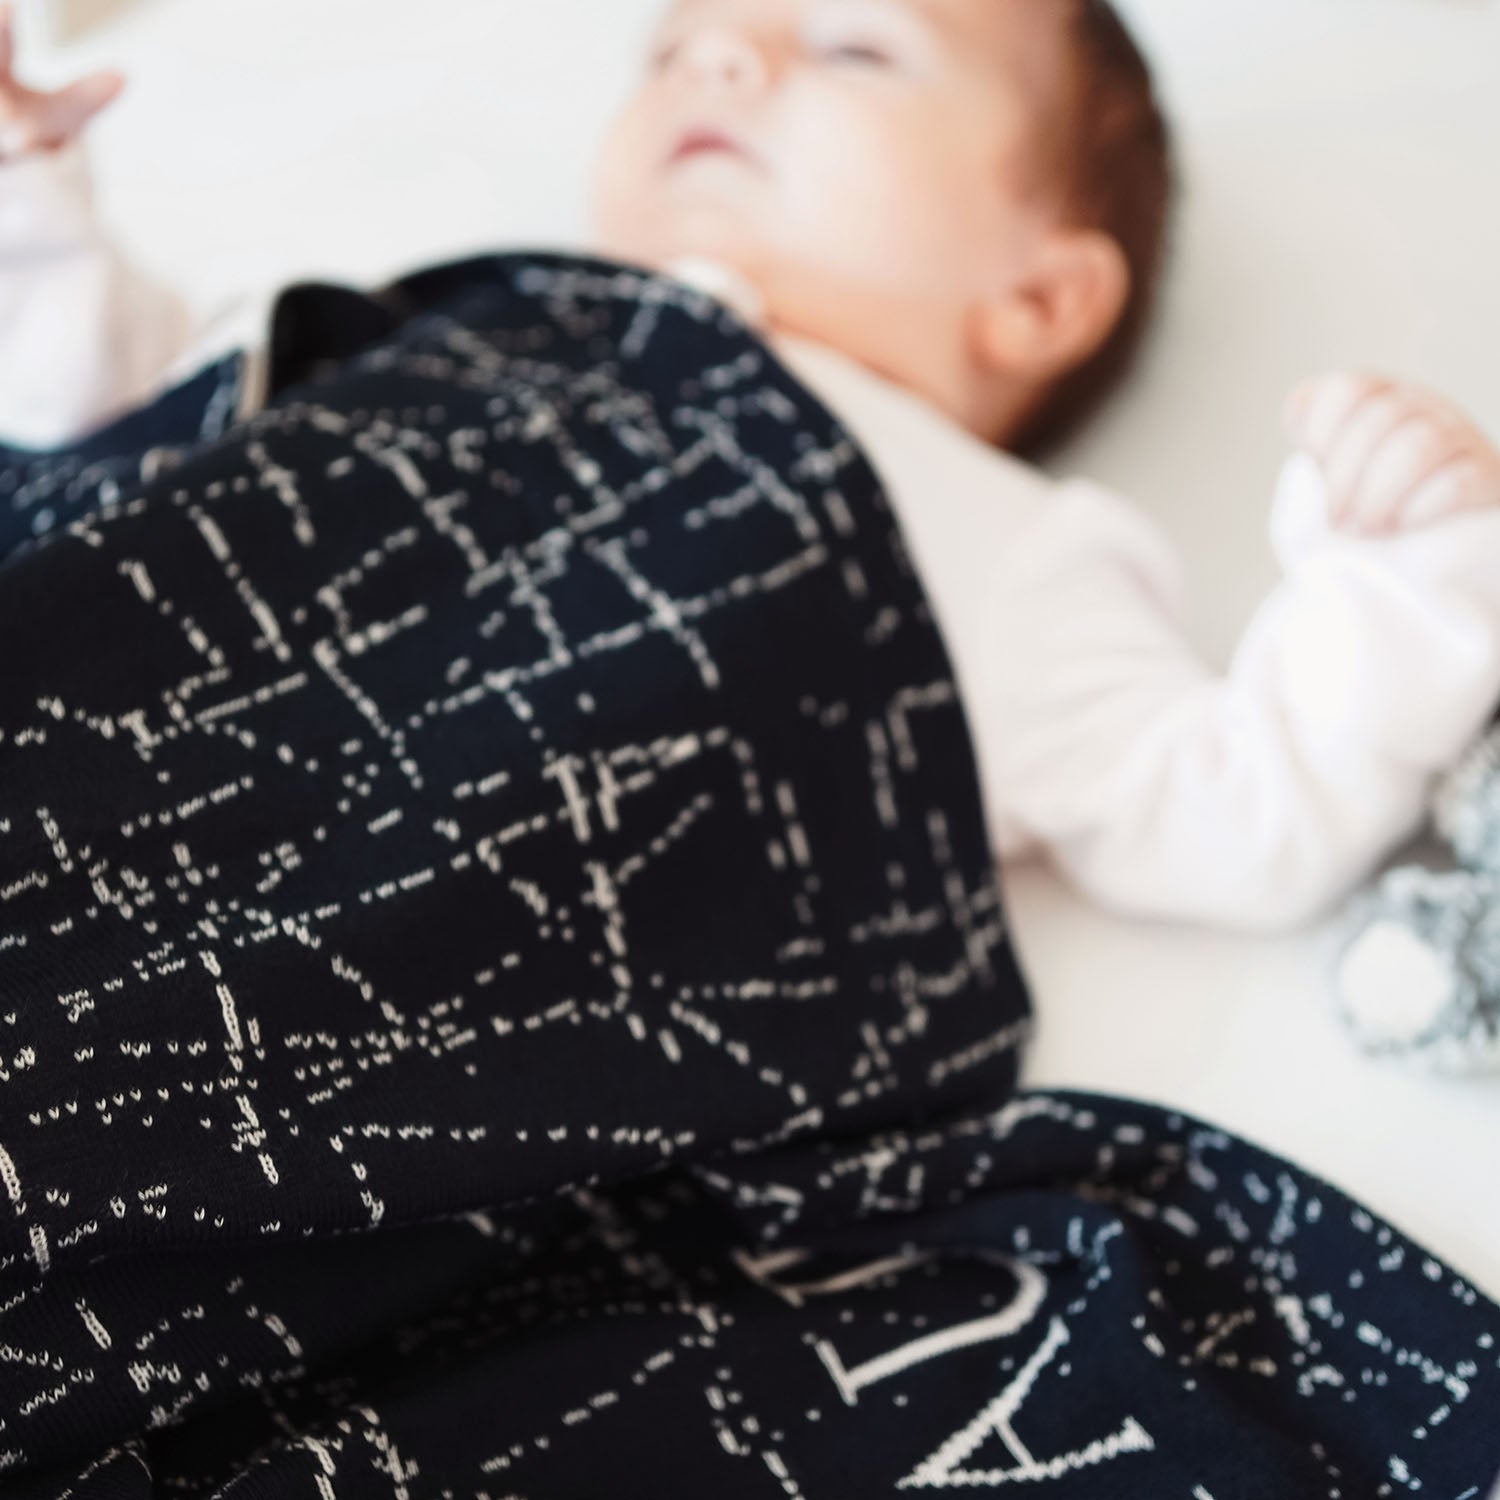 Personalisierte Babydecke 'MIDNIGHT' gestrickt aus Baumwolle mit Kaschmir. Ein ganz besonderes Geschenk zur Geburt oder Taufe. Individuell personalisierbar mit dem Wunschnamen des Kindes.